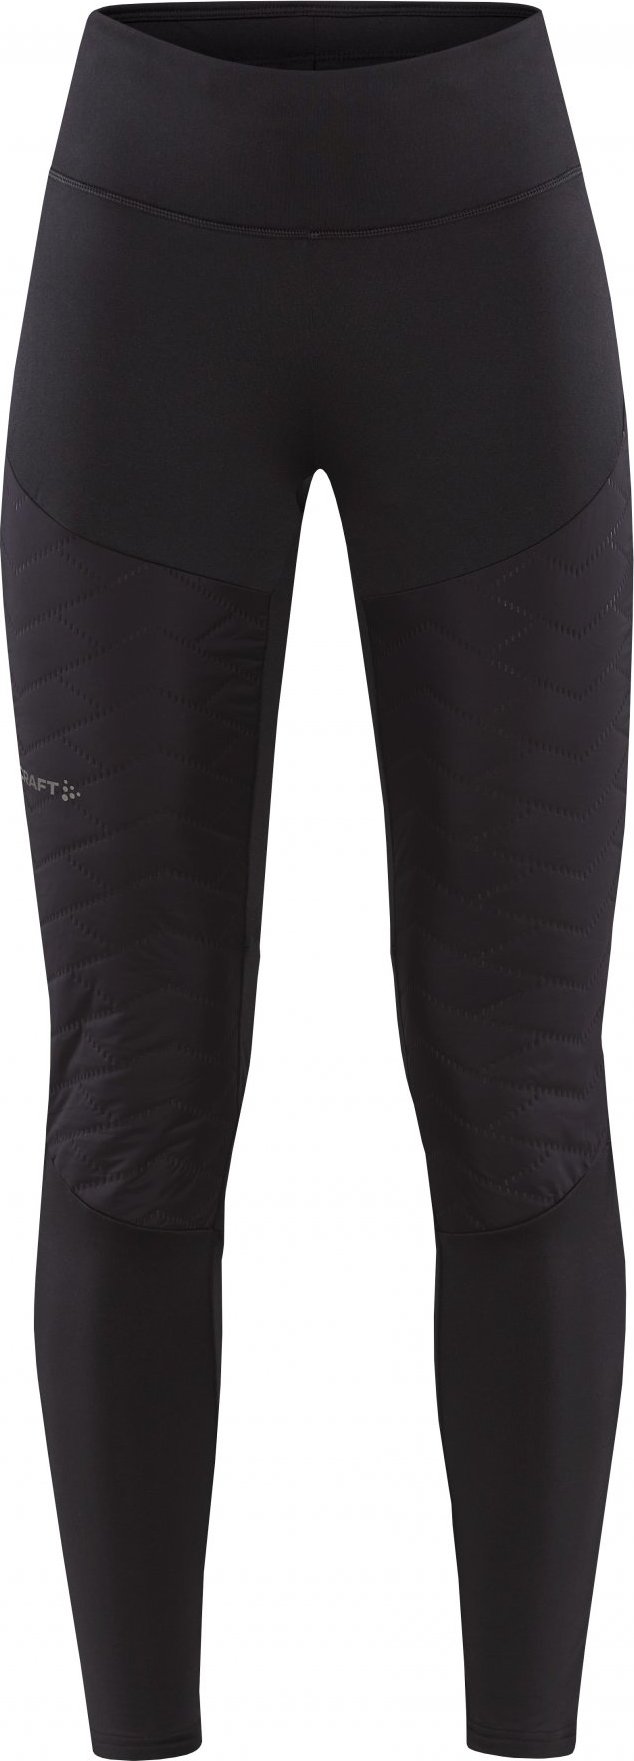 Dámské zateplené kalhoty CRAFT Adv Subz Tights 3 černé Velikost: XL